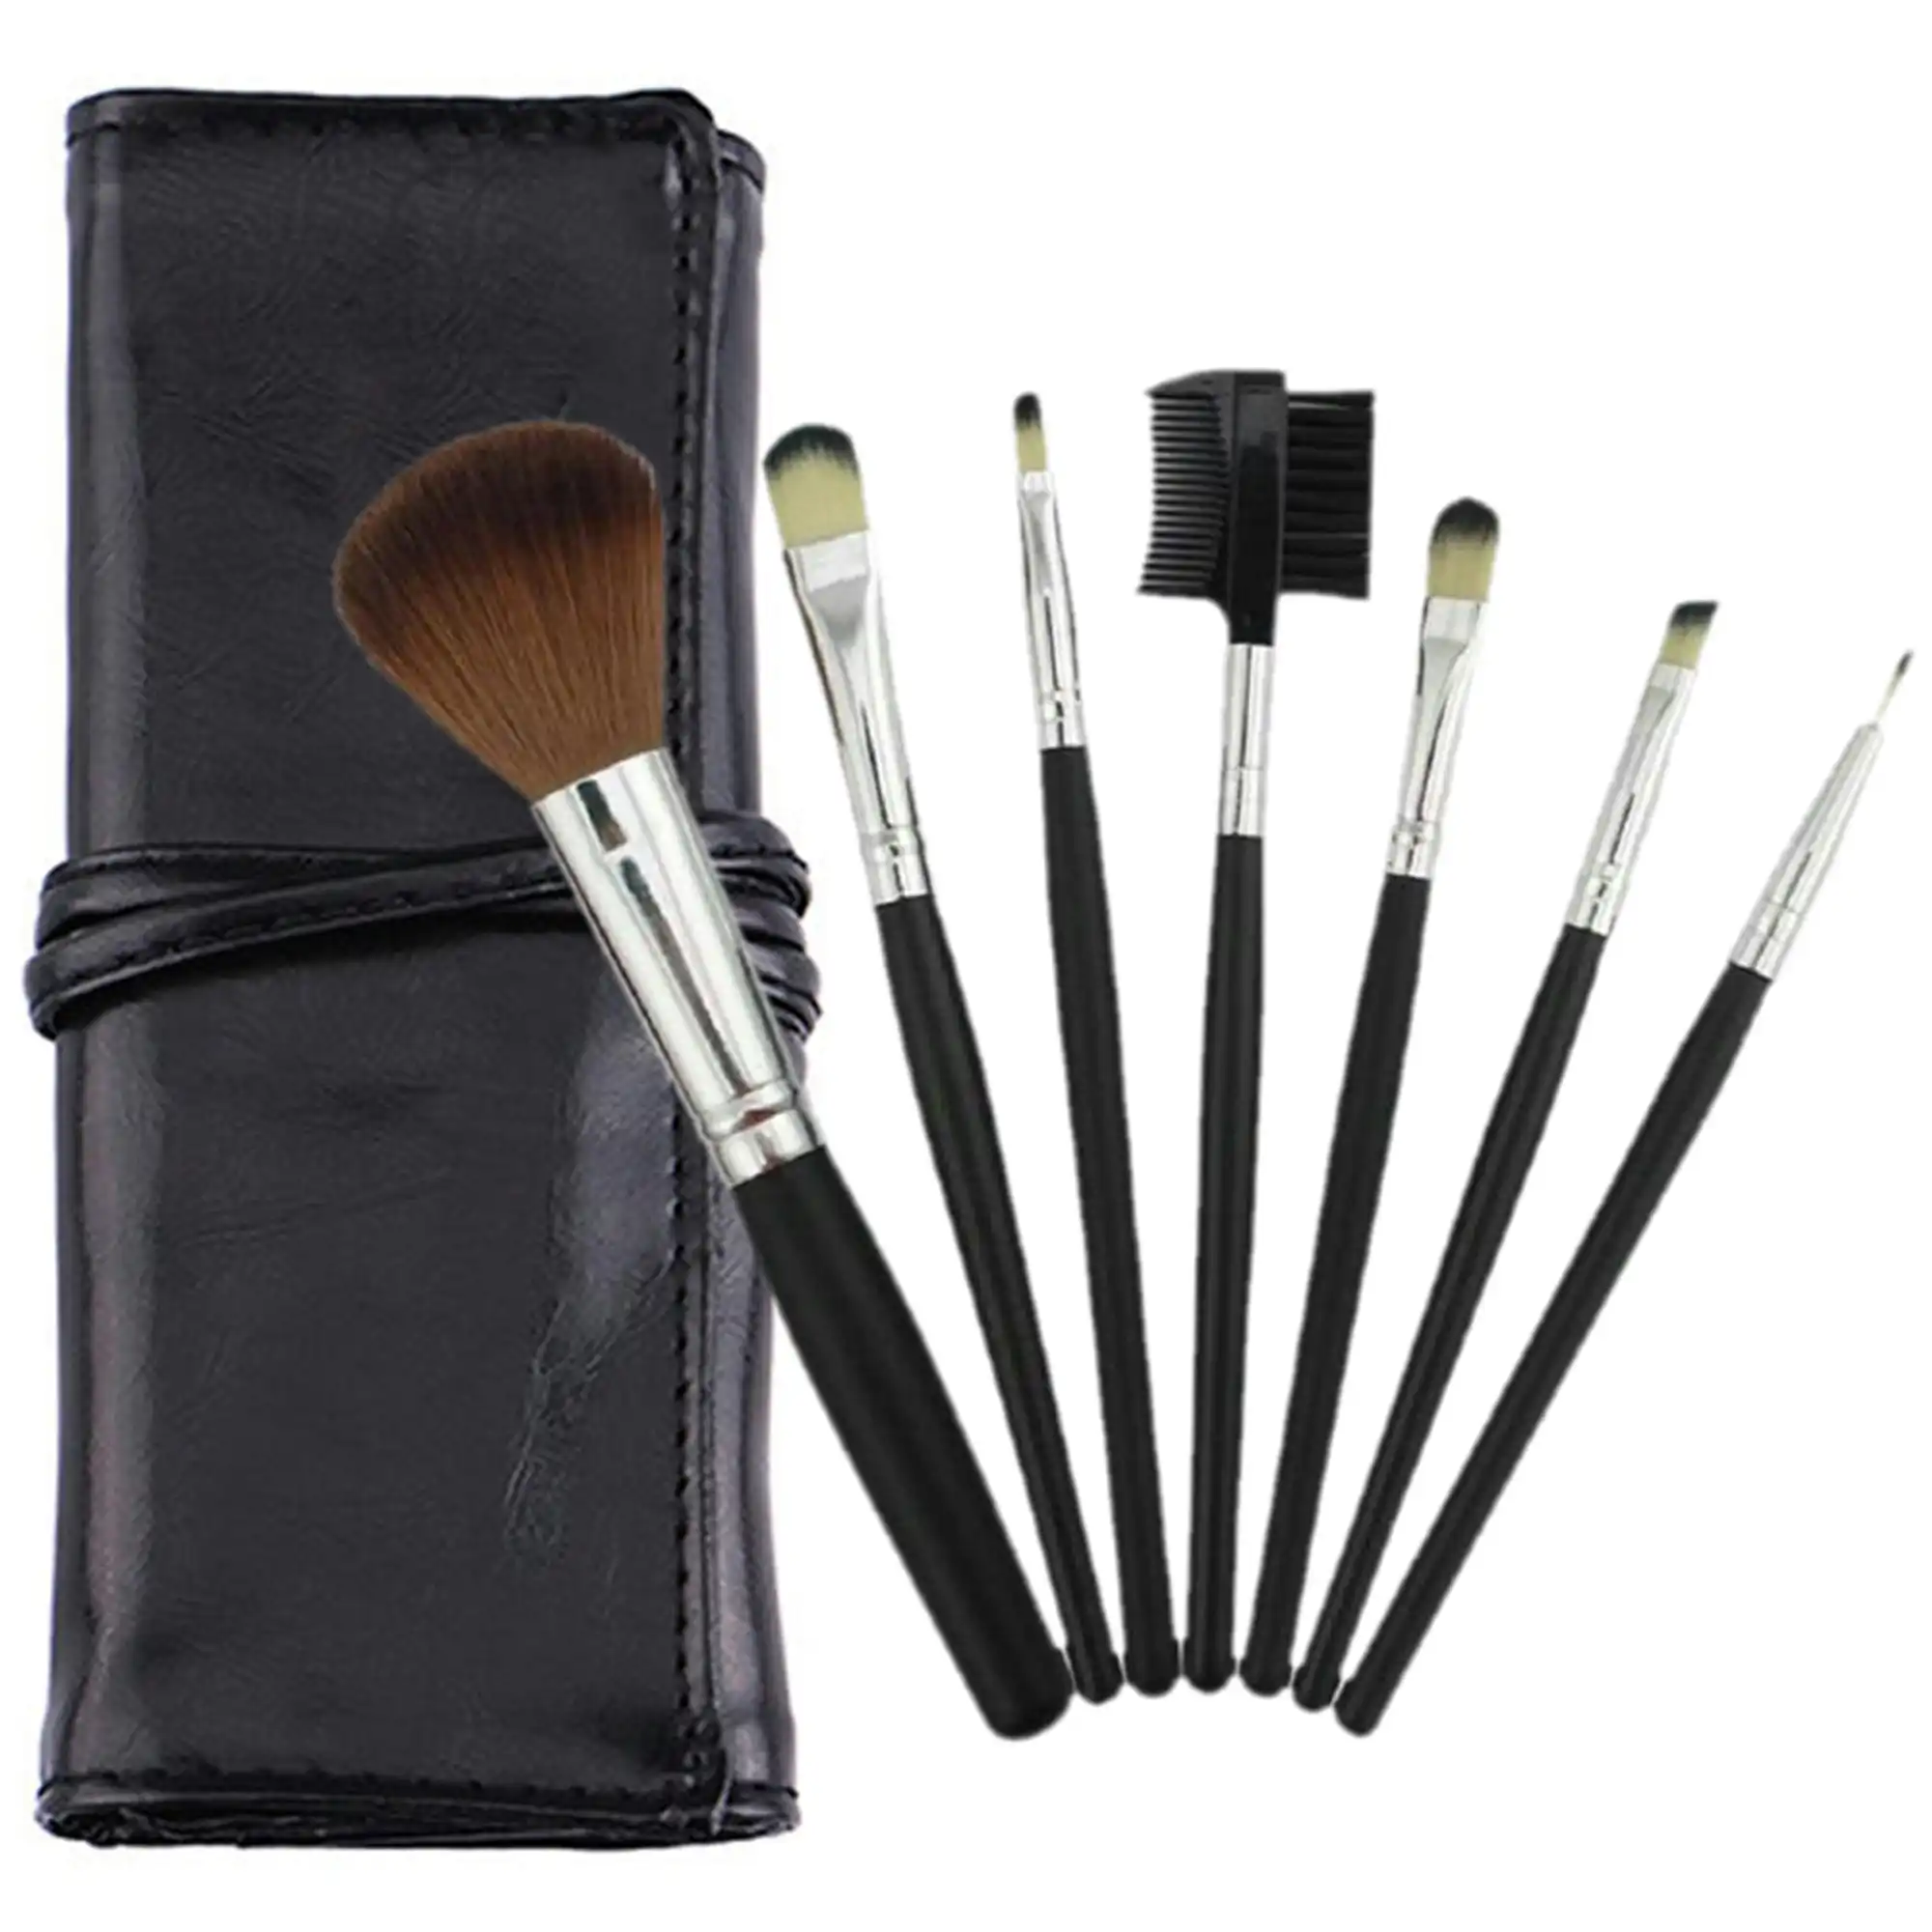 7 Piece Professional Makeup Brush Set Soft Bristle Carry Case Black